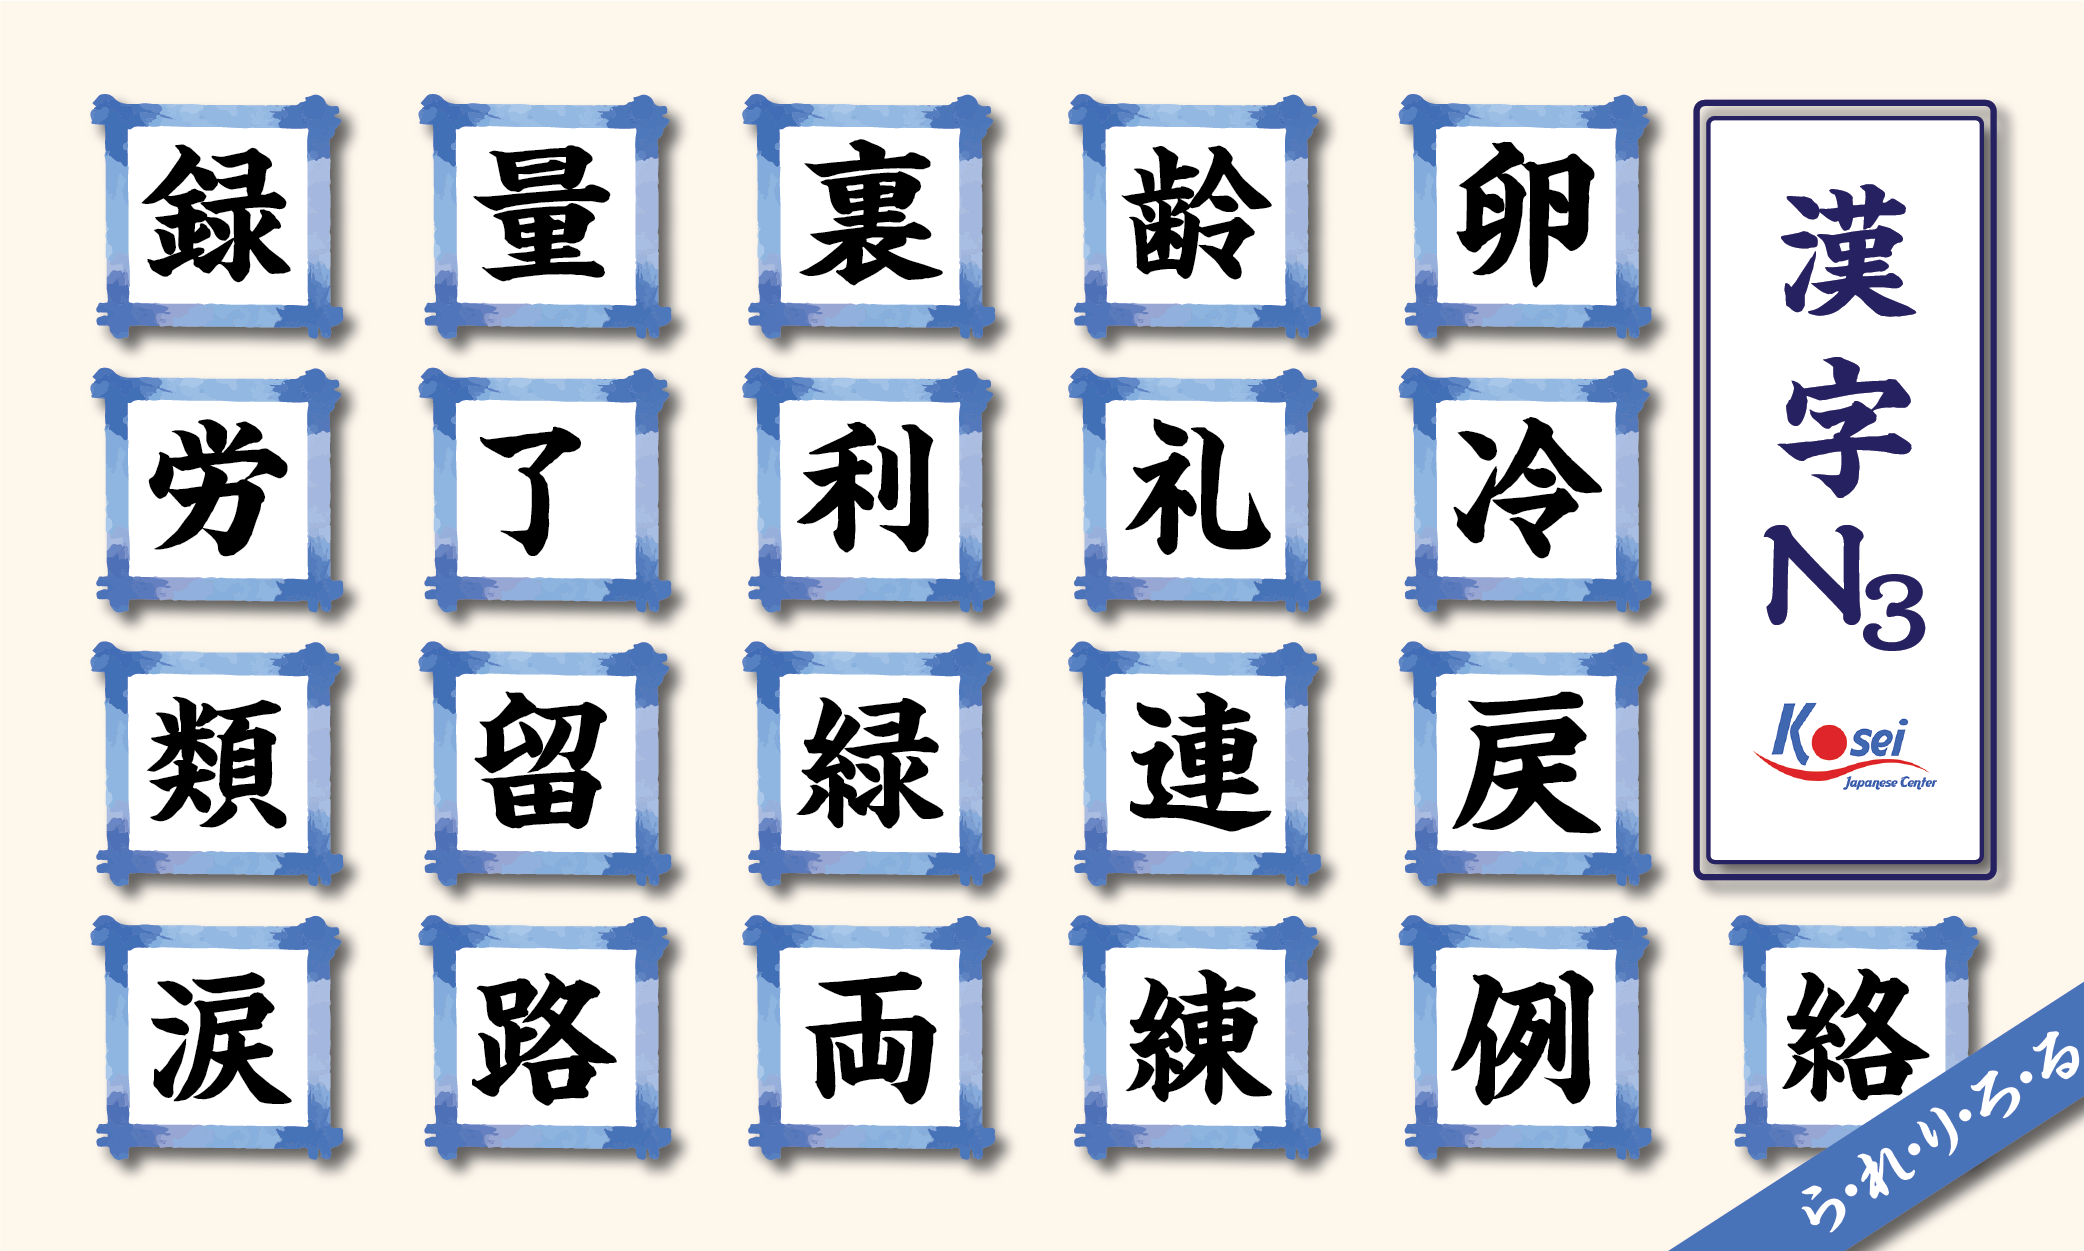 kanji n3 theo âm on hàng r